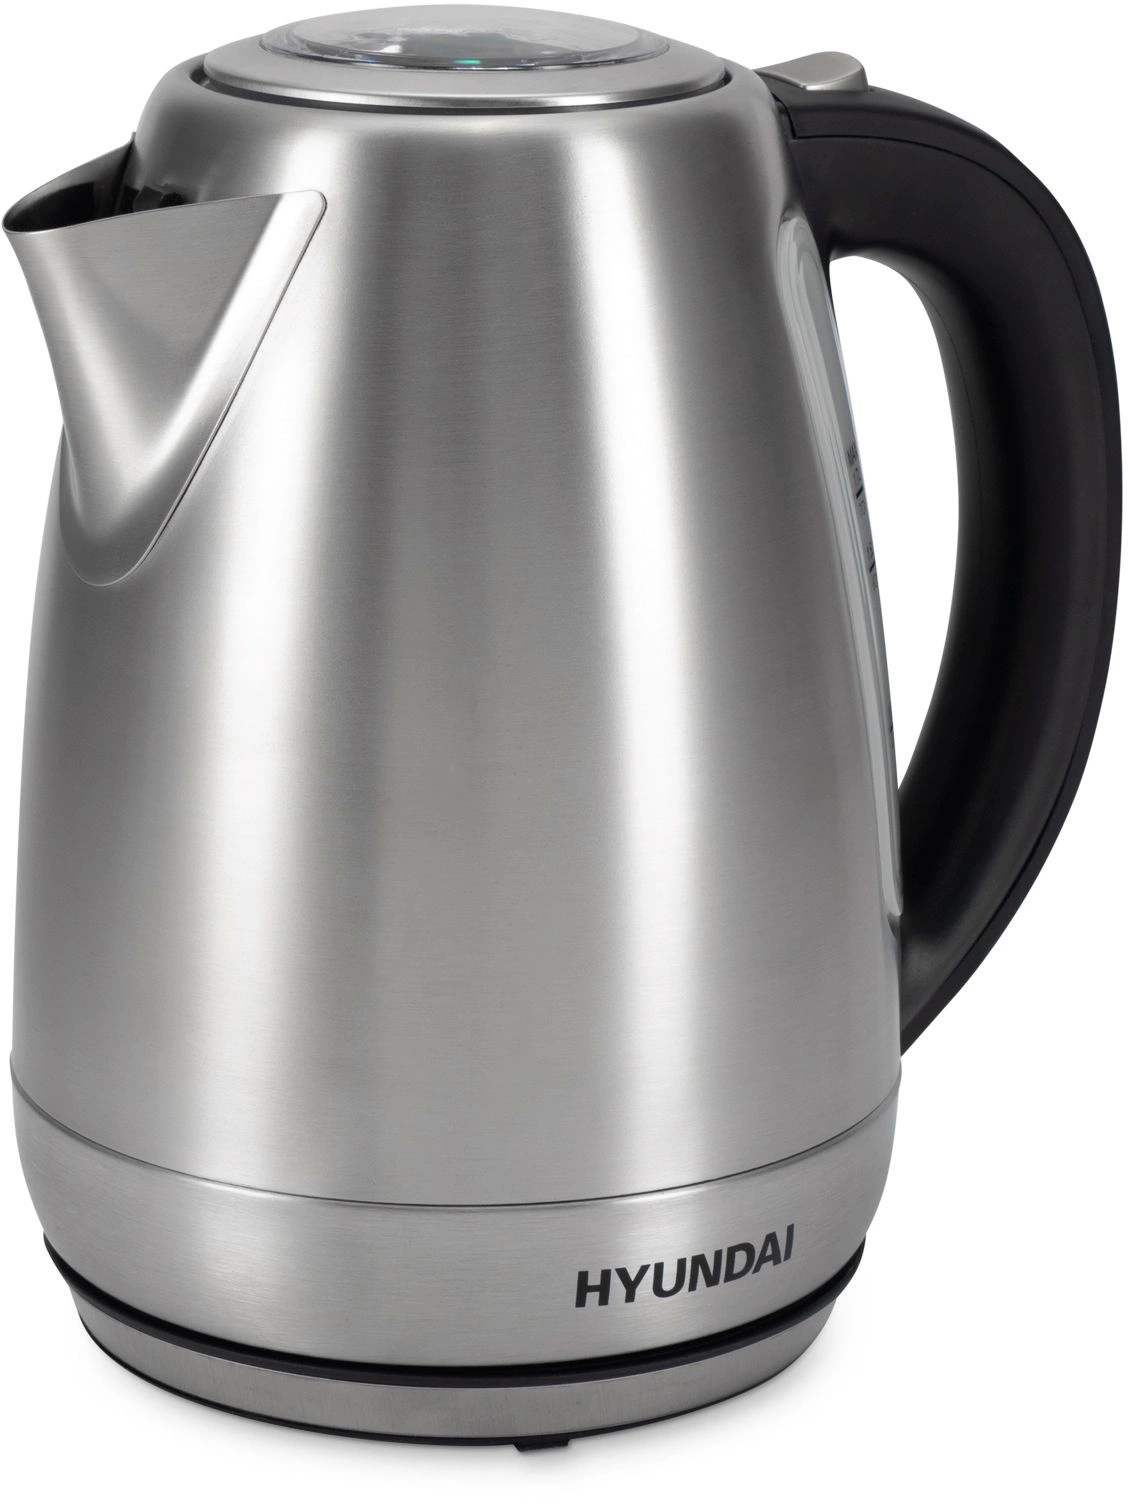   Hyundai HYK-S8408 1.7. 2200  / : 